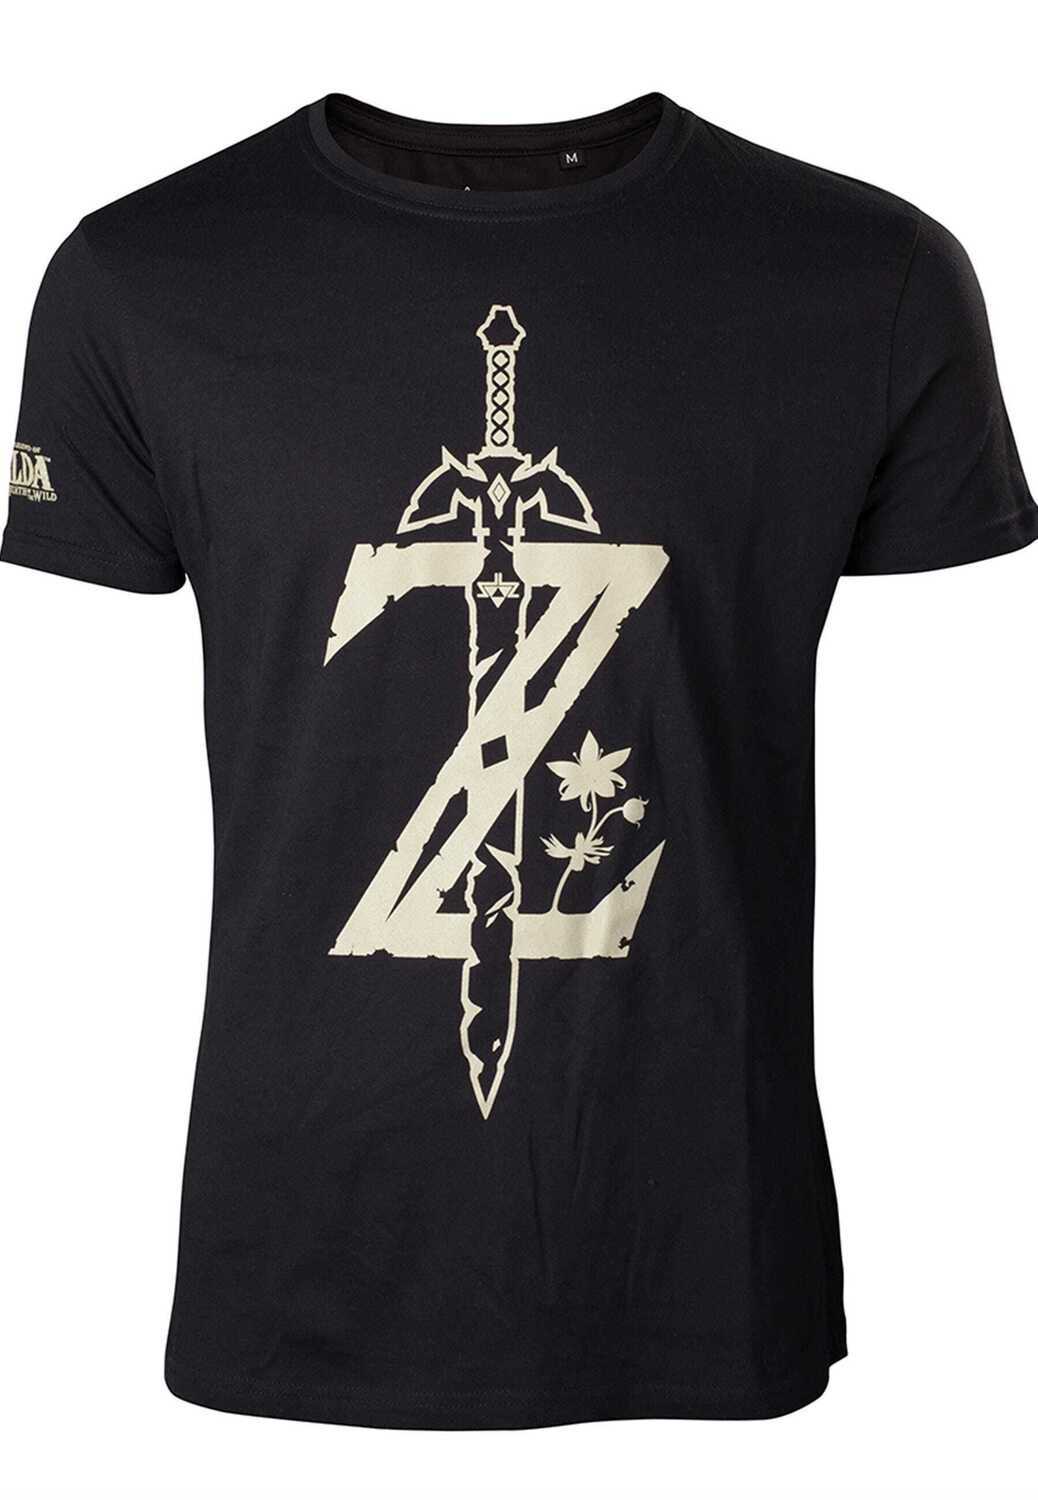 Zelda - T-Shirt Men's Z with Sword